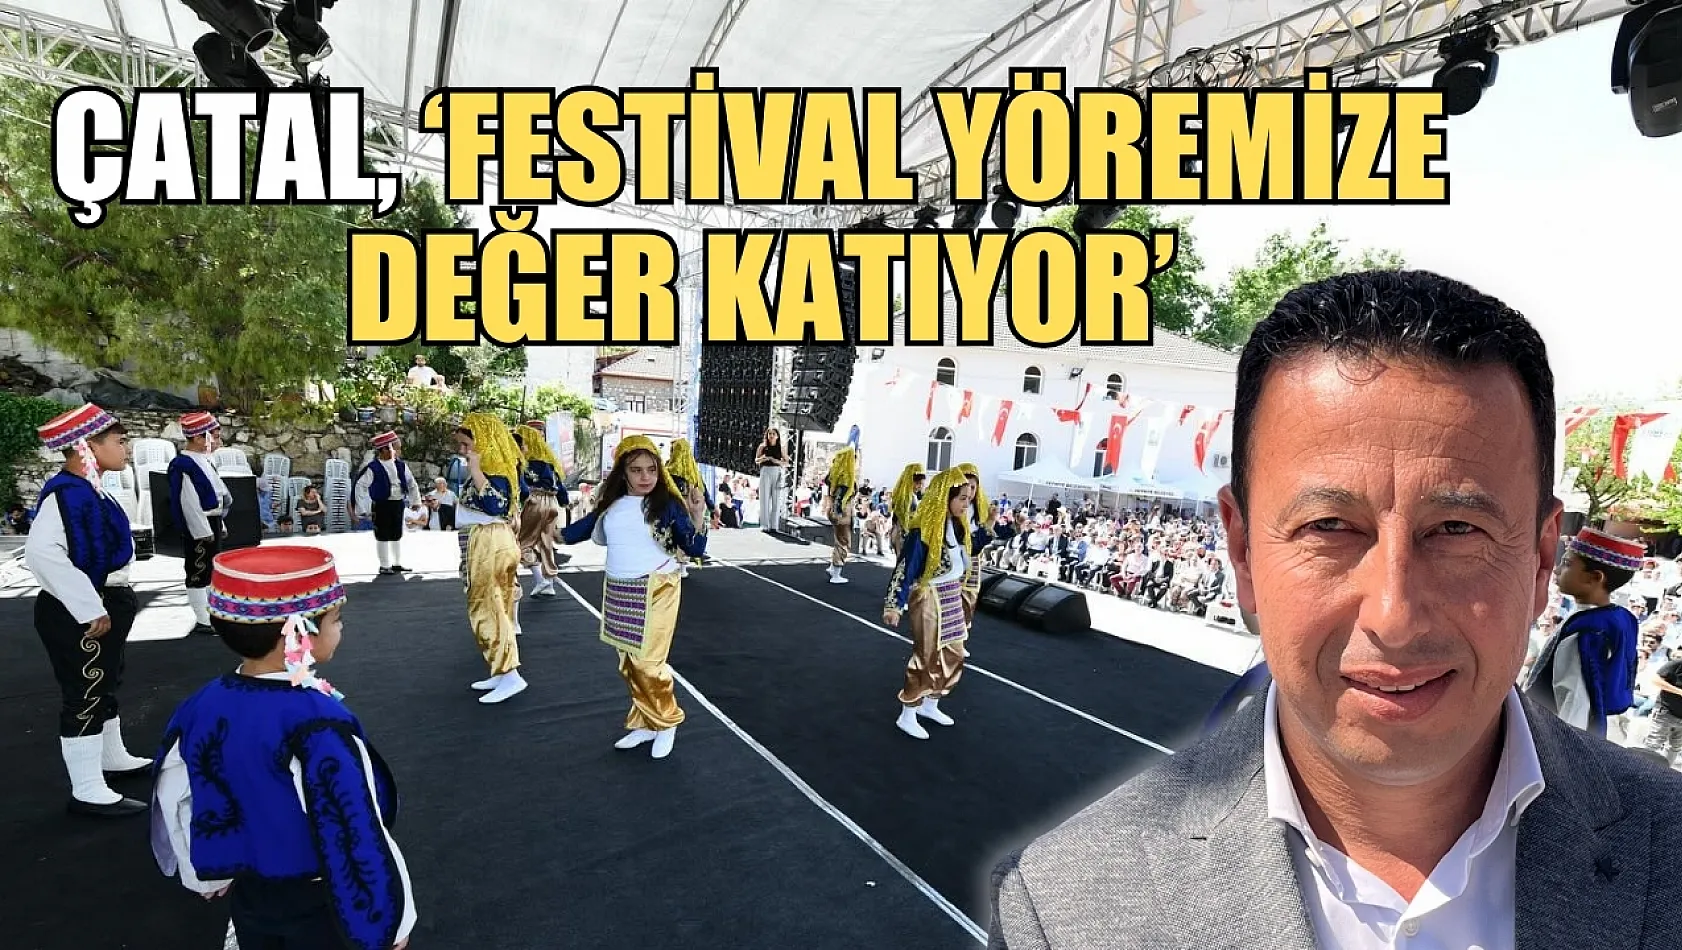 Dastar ve Kuzugöbeği Festivali devam ediyor Çatal, 'Festival yöremize değer katıyor'